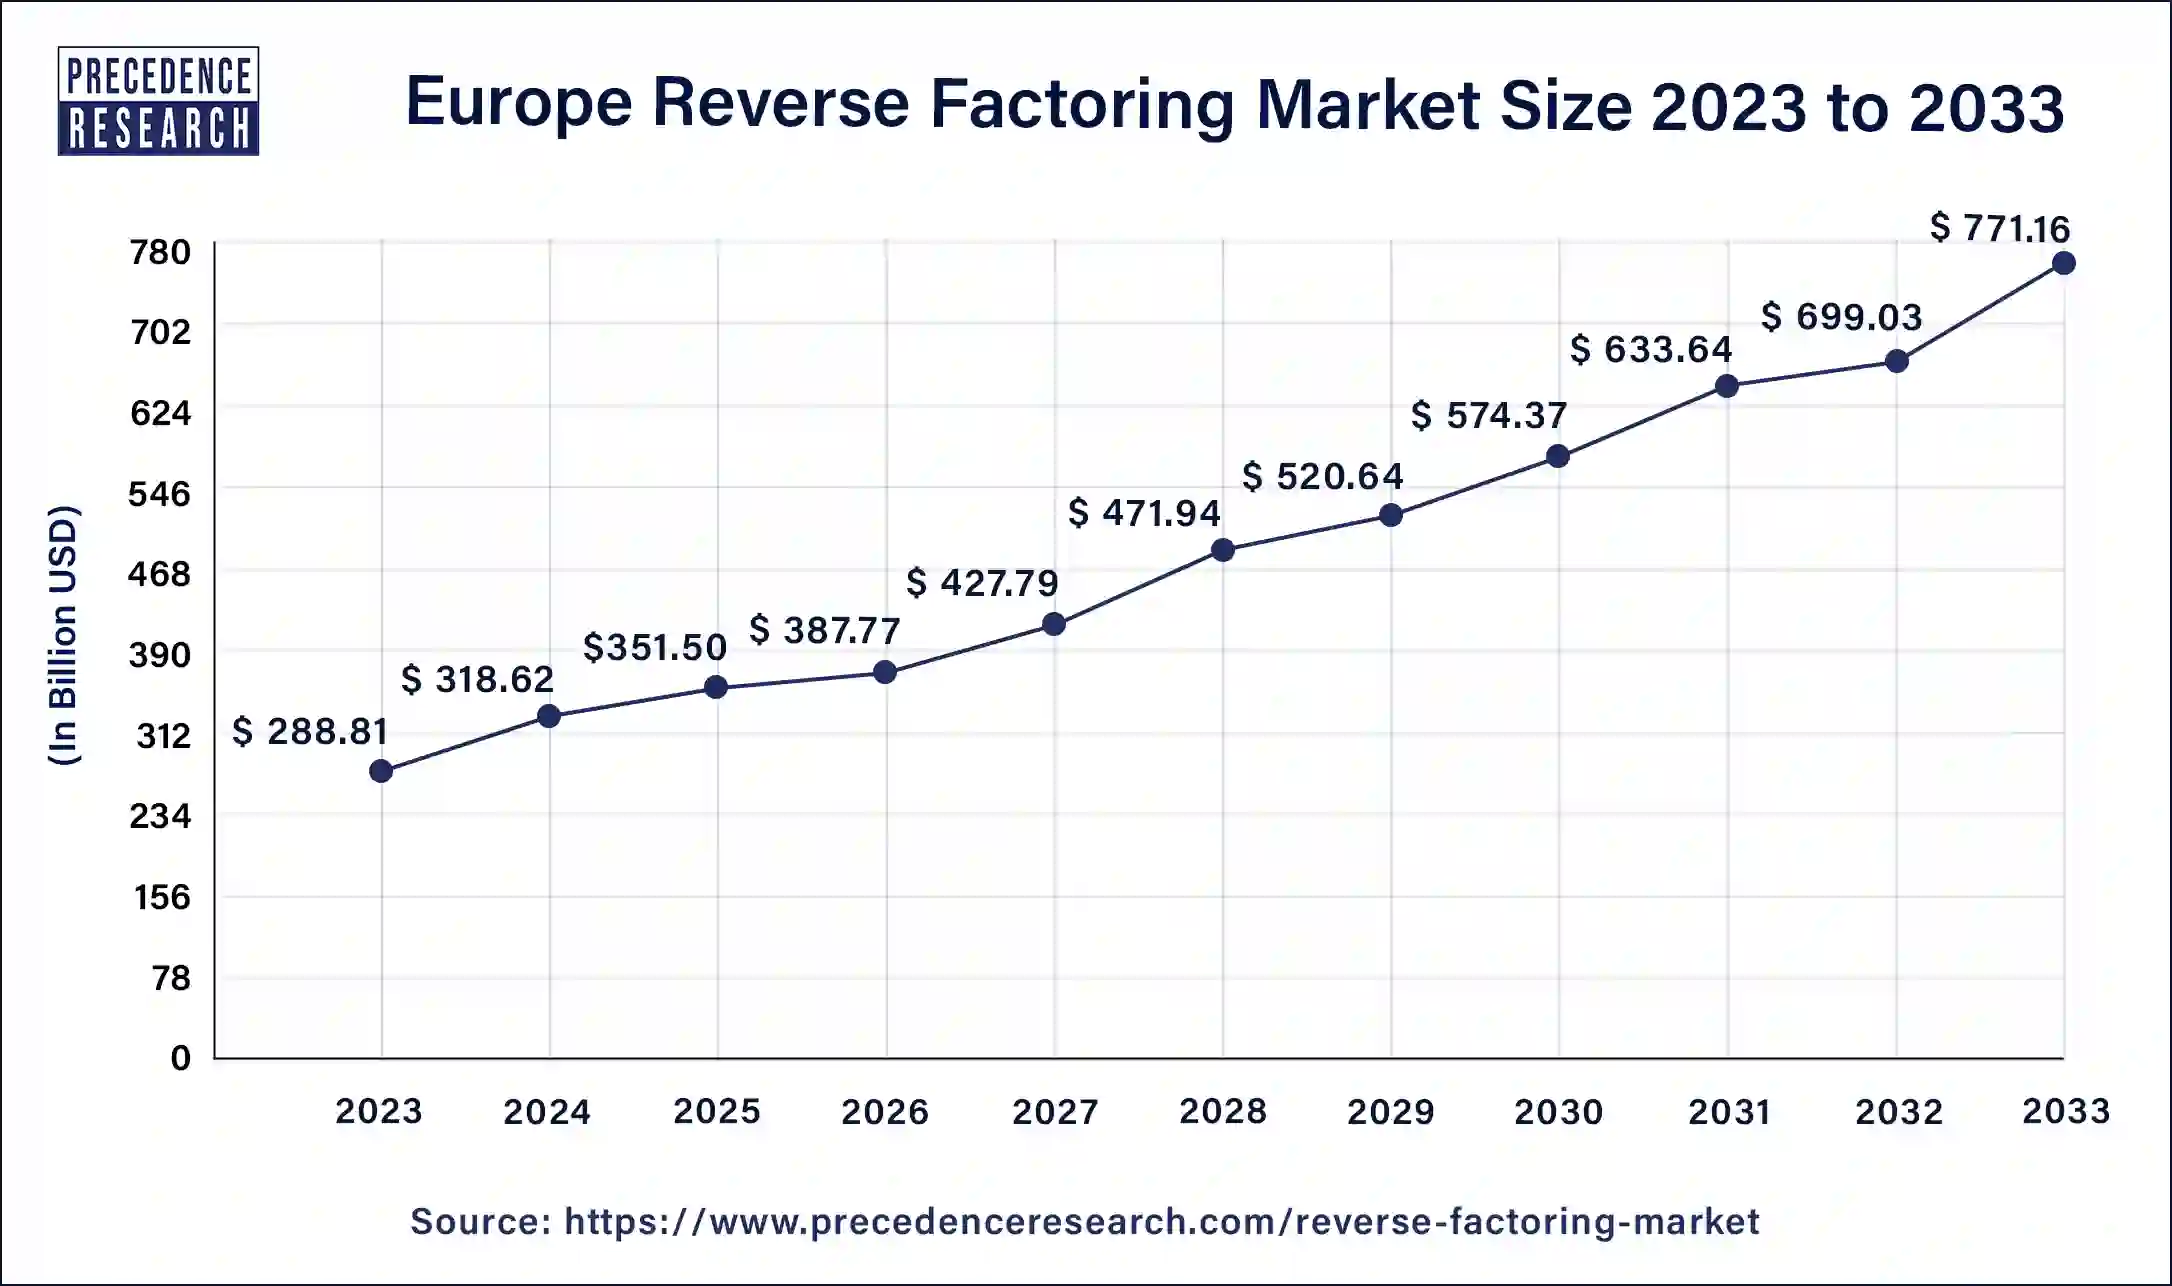 Europe Reverse Factoring Market Size 2024 to 2033